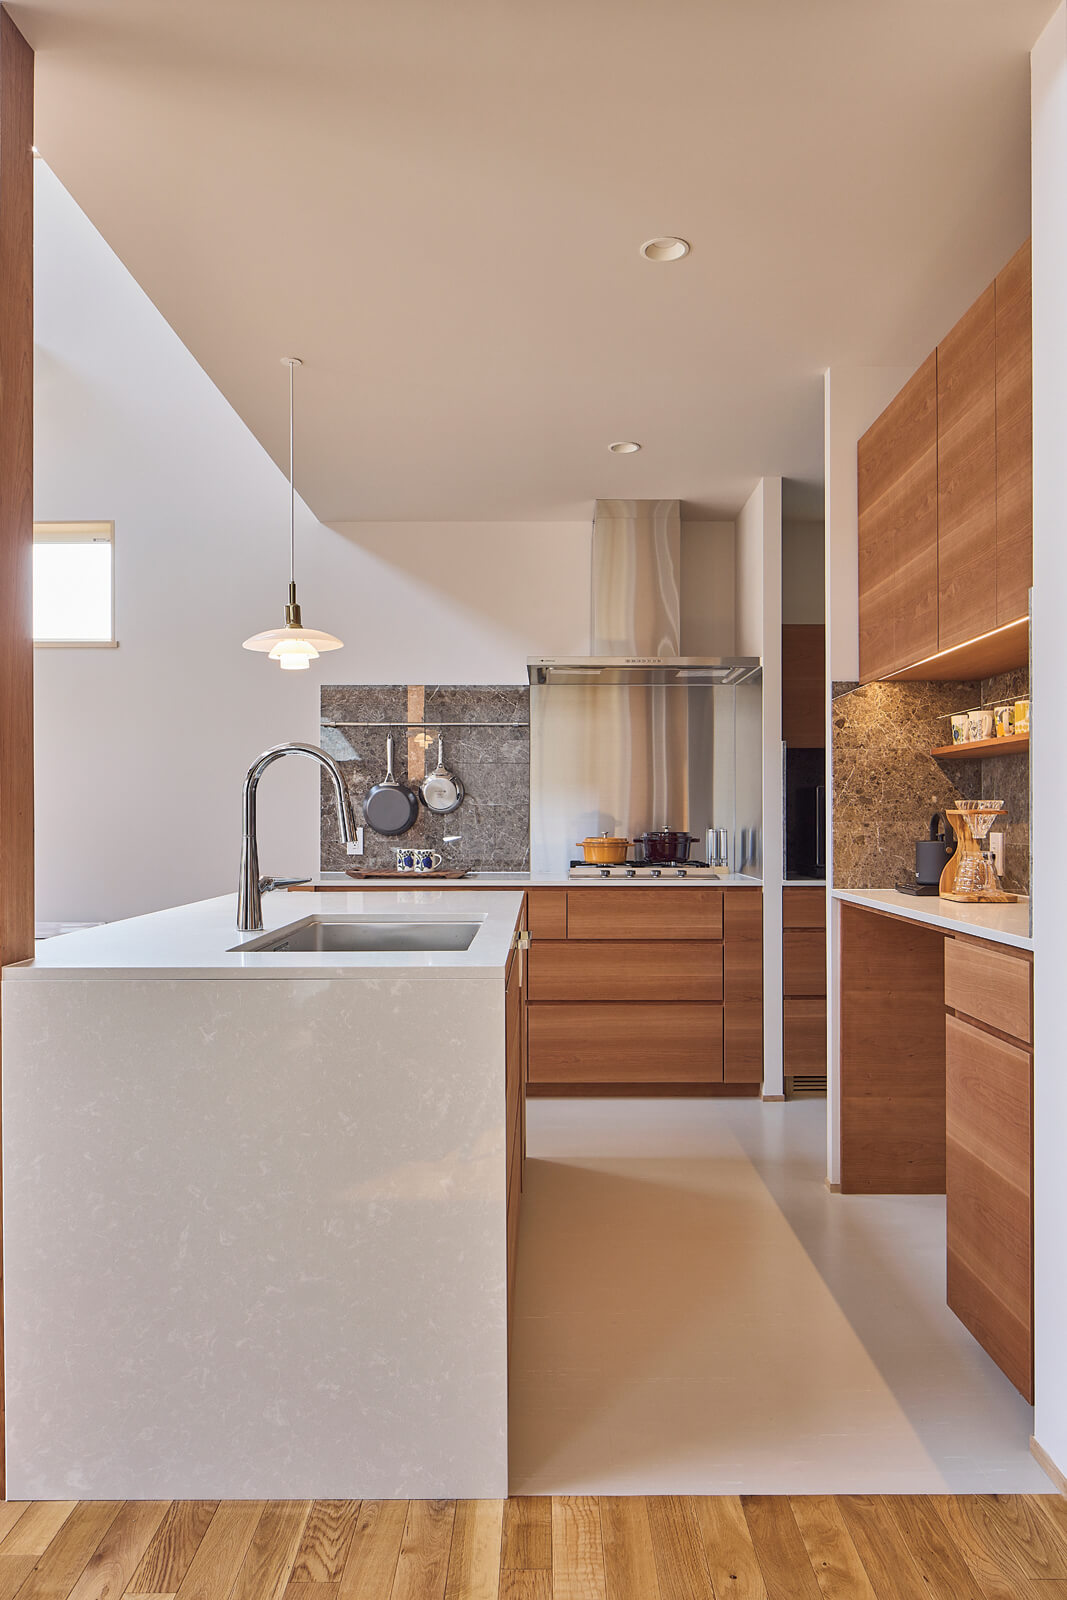 キッチンは側面とトップに、洗面台と同じクォーツスラブを採用し、収納部はチェリー材を使った。石と木の調和が美しいキッチンに、PHランプがアクセントになっている